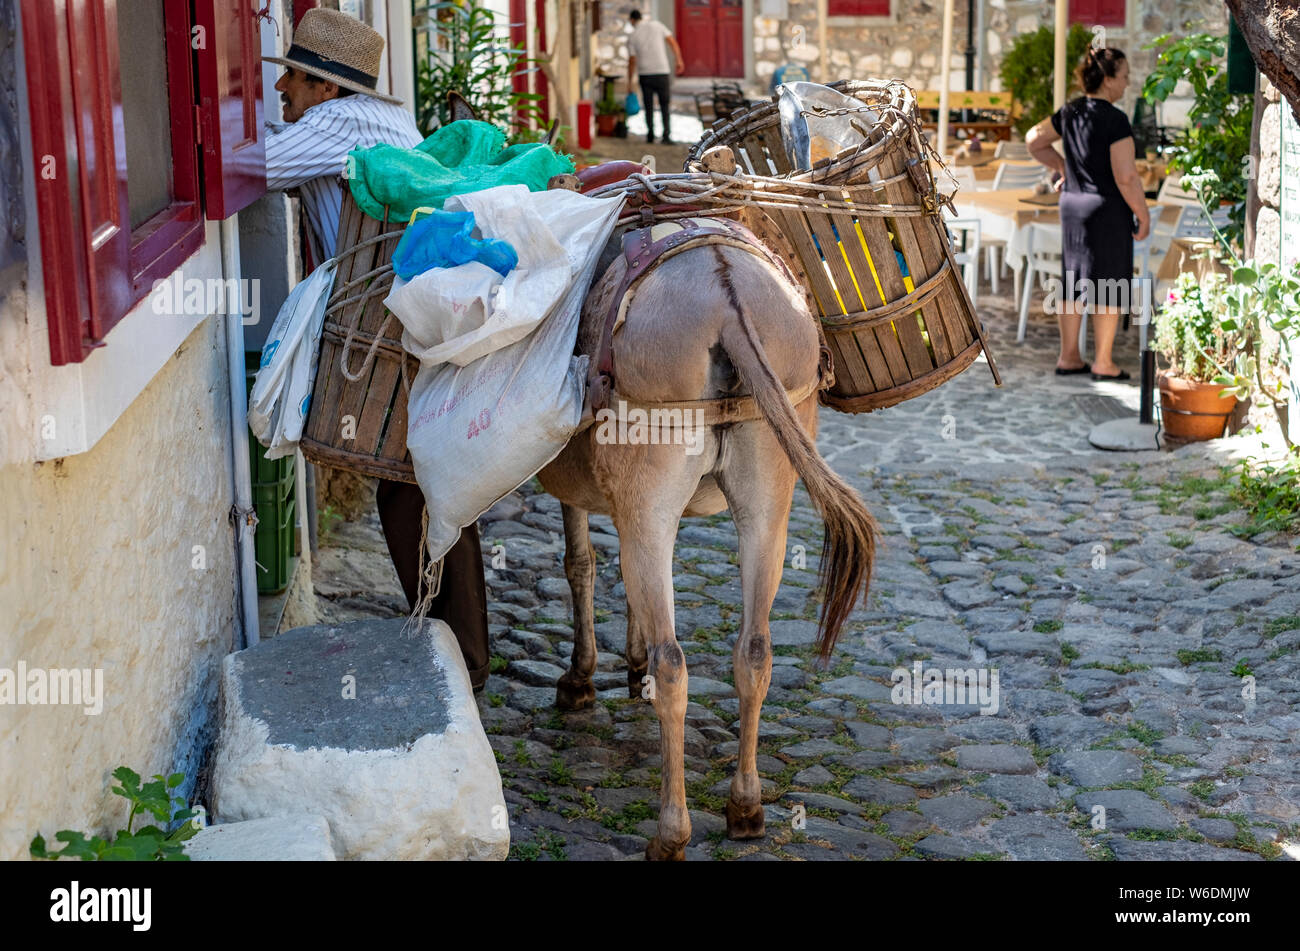 Une scène de village dans les régions rurales de la Grèce comme un homme avec son âne parle à un acheteur potentiel de ses légumes dans une place de village Banque D'Images